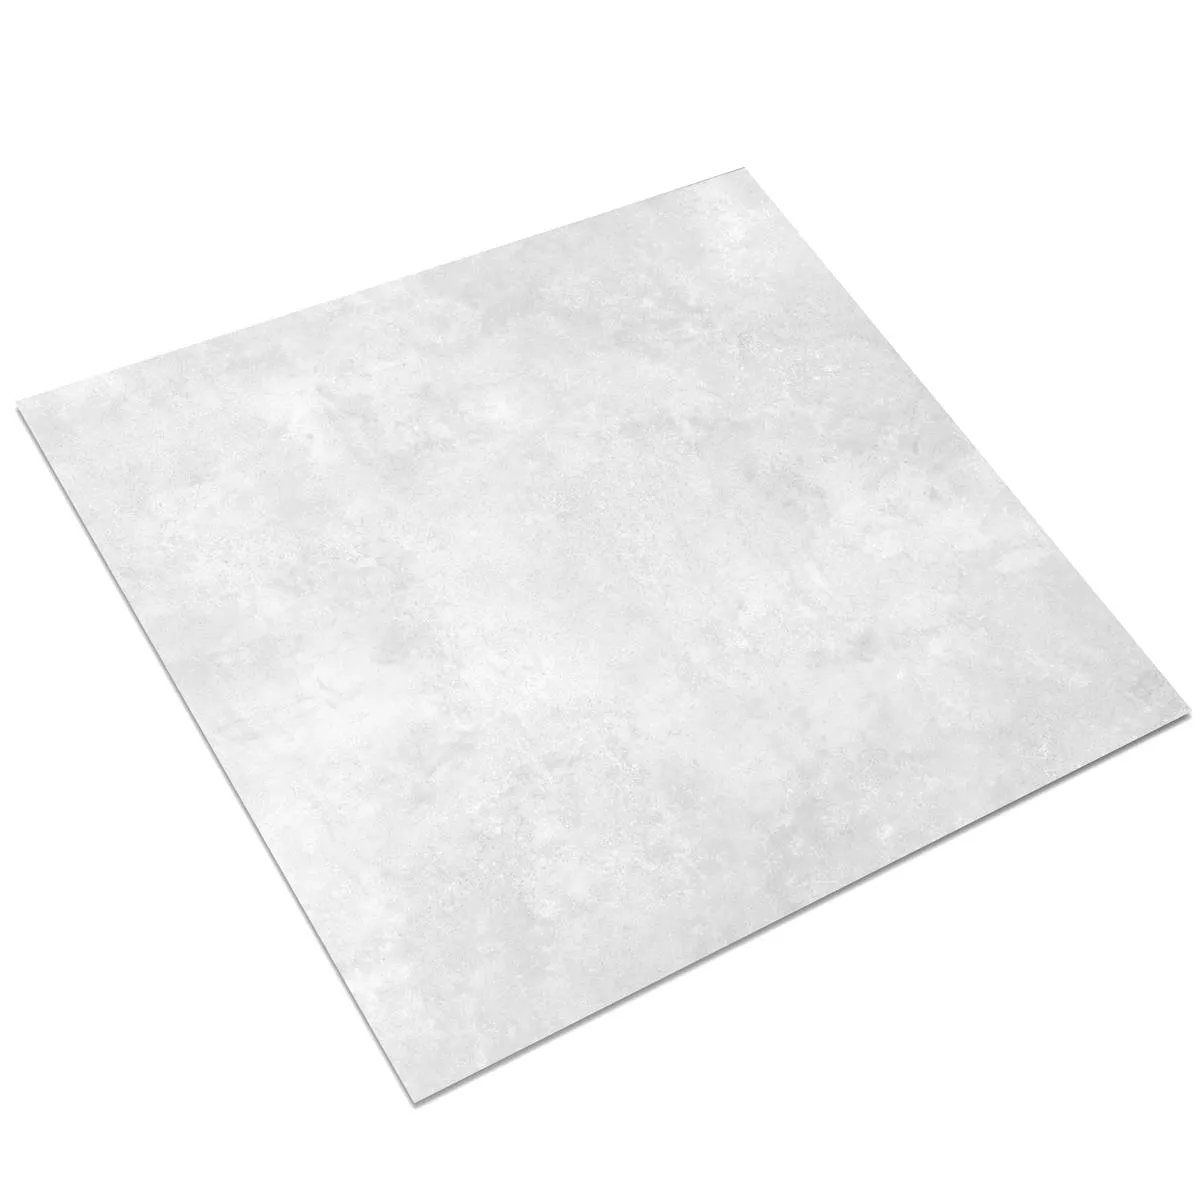 Πλακάκι Δαπέδου Illusion Μεταλλική Εμφάνιση Lappato Ασπρο 120x120cm